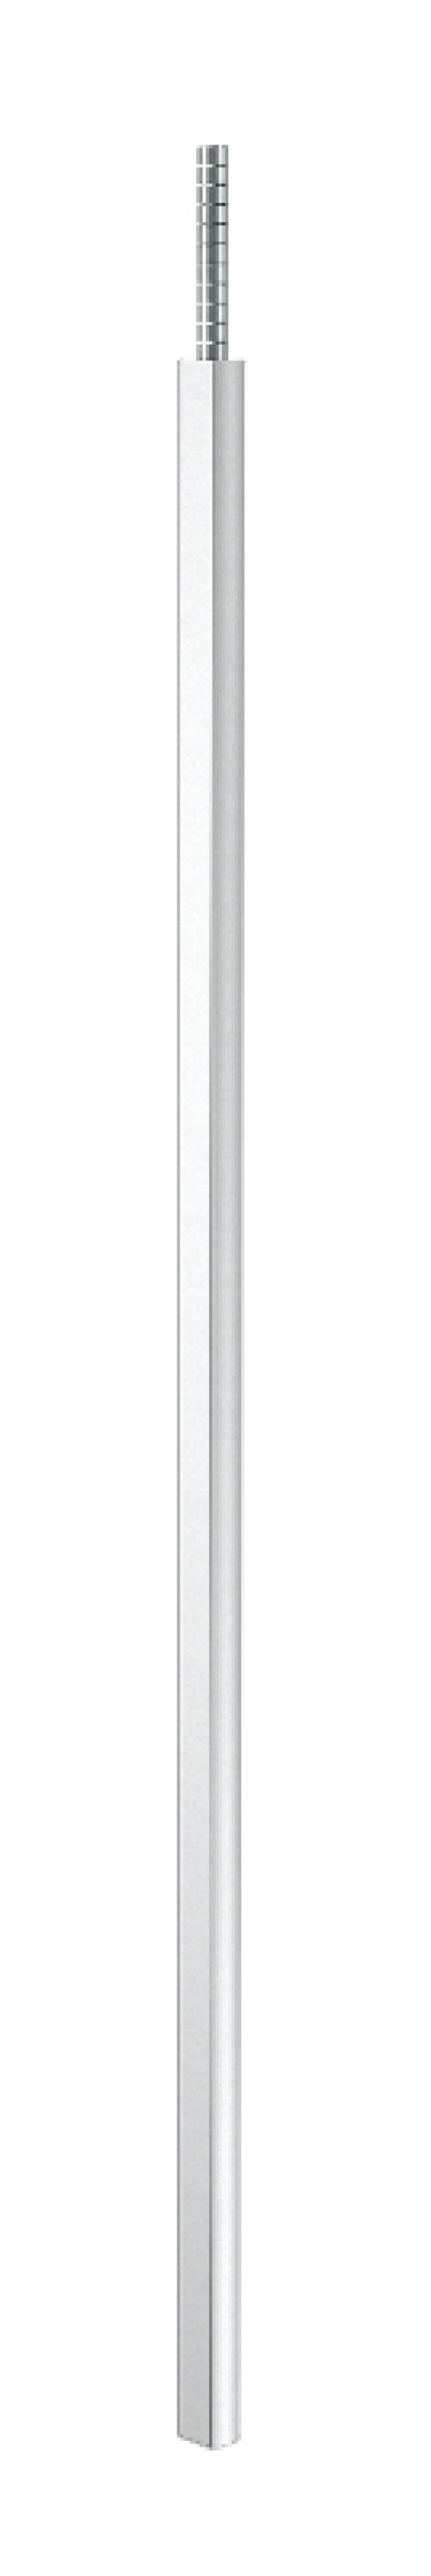 6290095 - OBO BETTERMANN Электромонтажная колонна 2,3-3,8 м 1-сторонняя Modul45 70x2300 мм (алюминий,белый) (ISSRM45FRW).